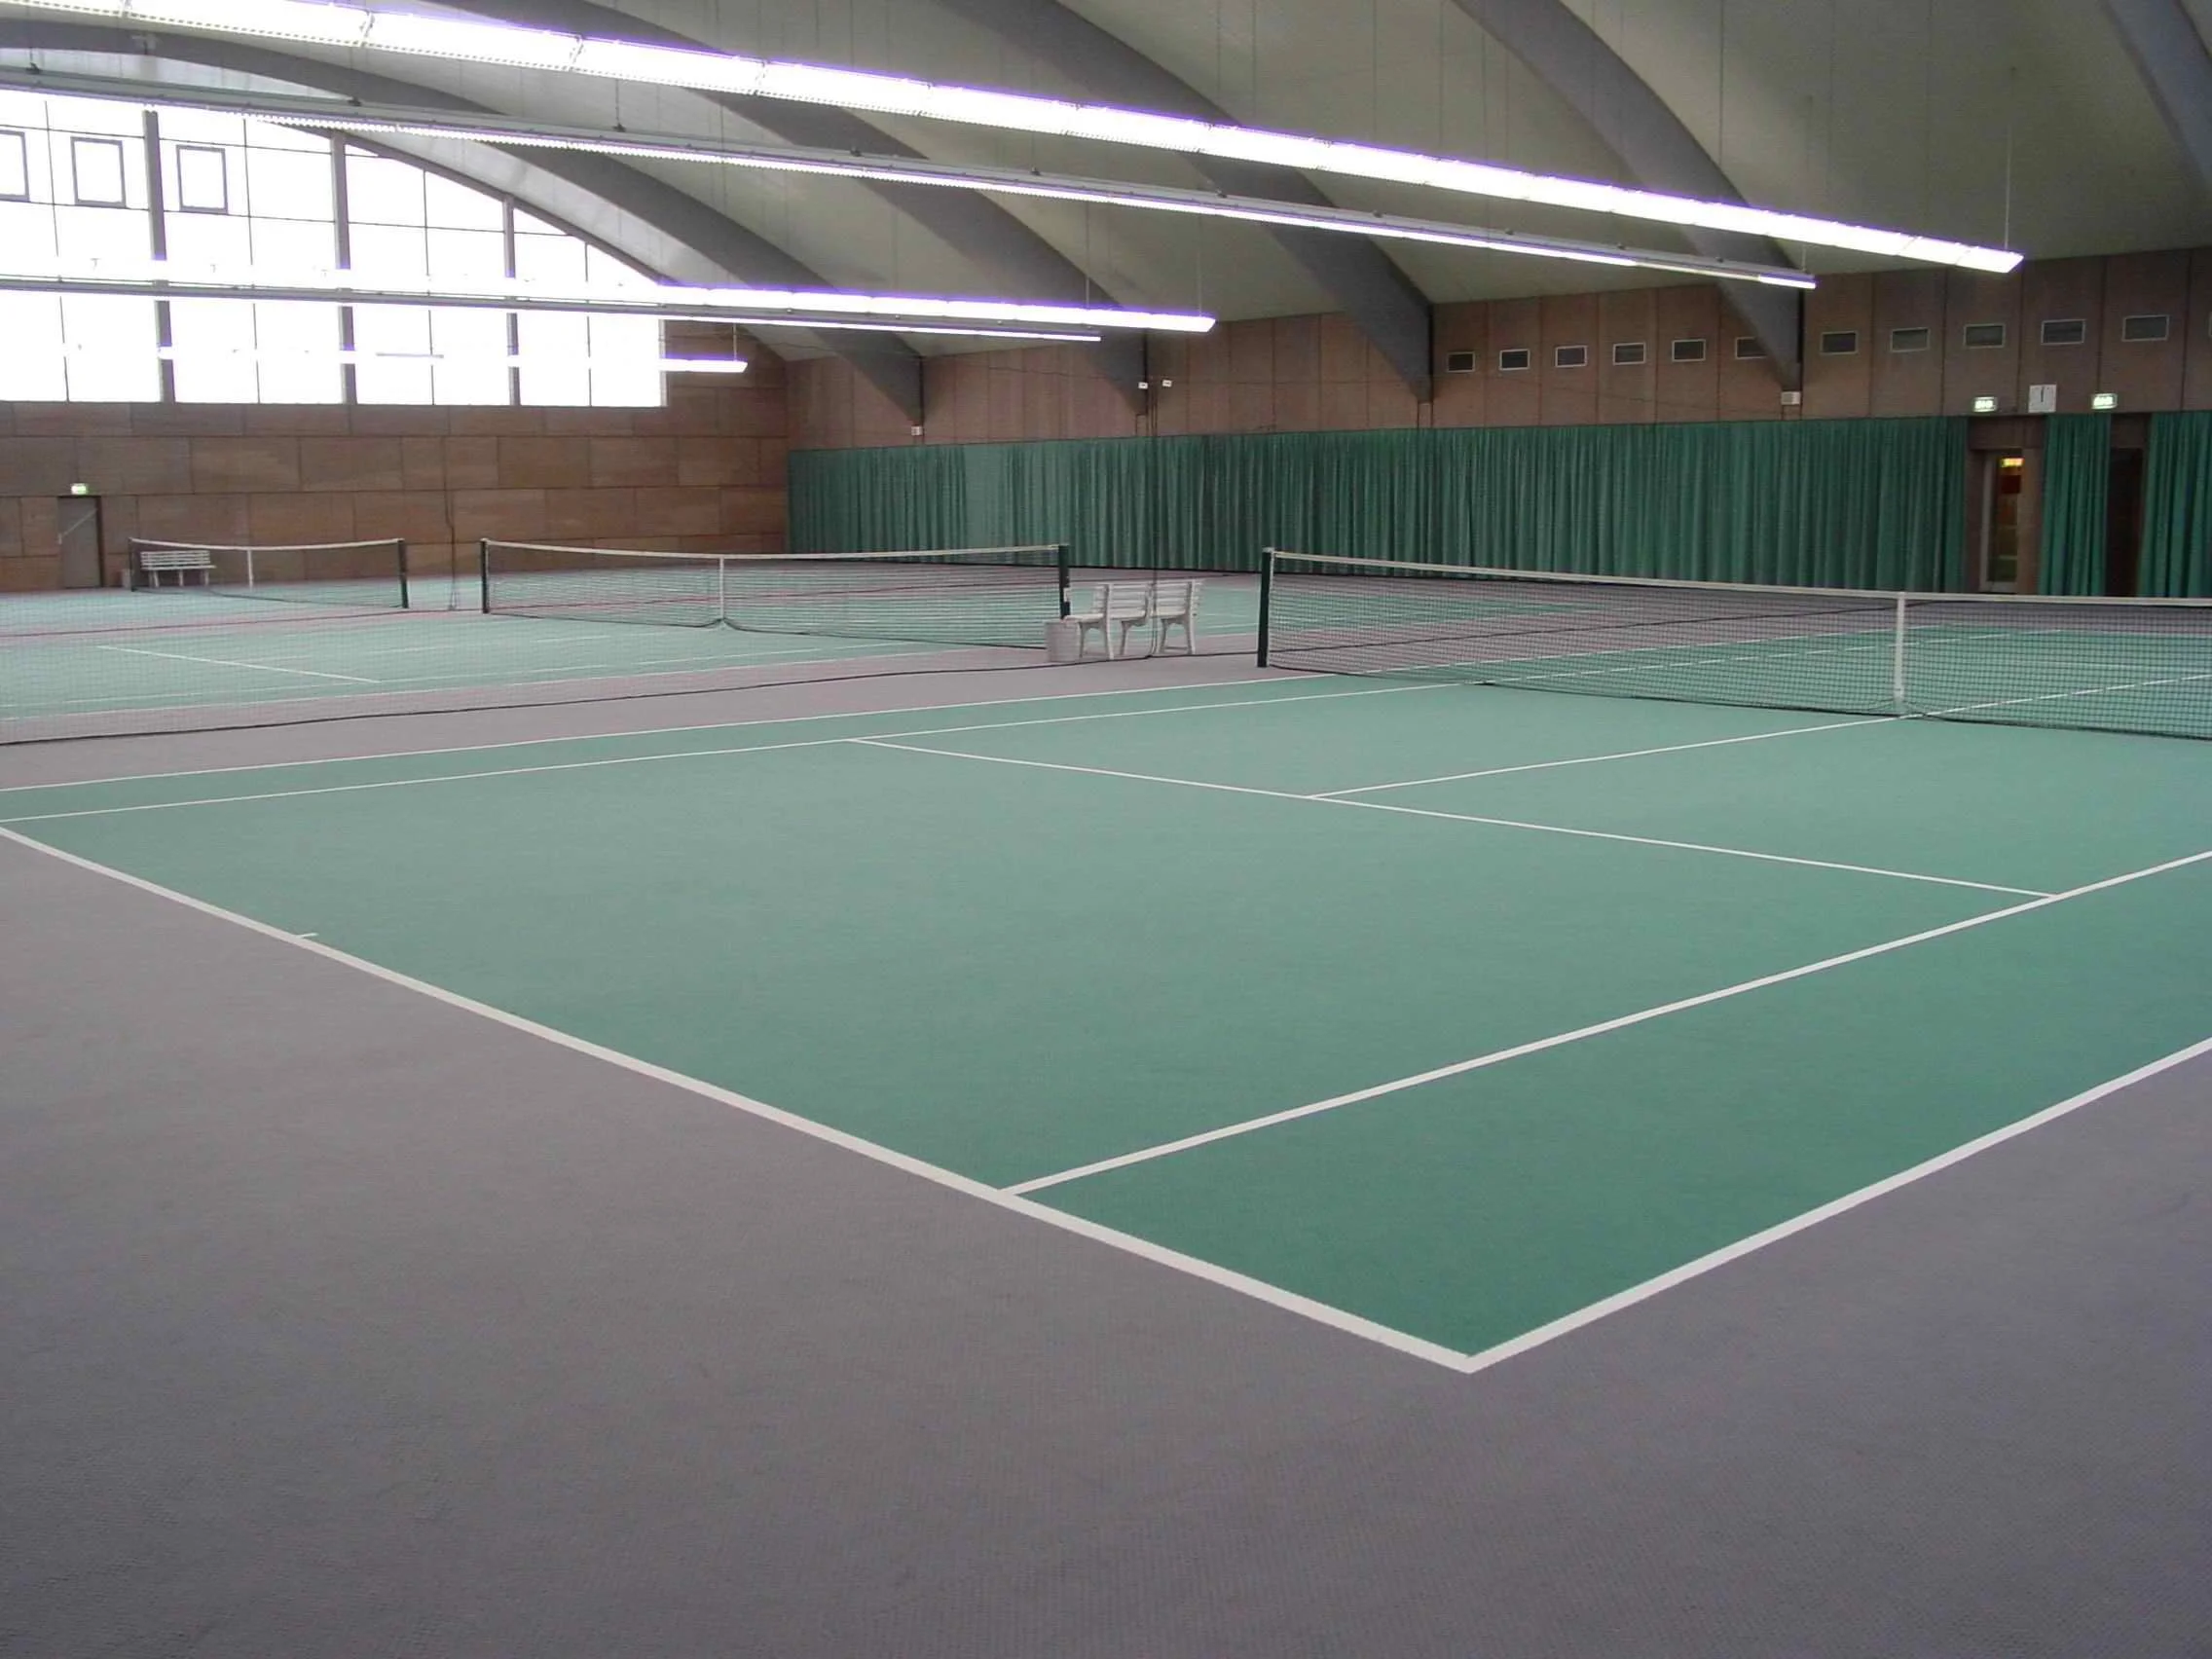 Carpet Tennis Court Tournaments Carpet Vidalondon